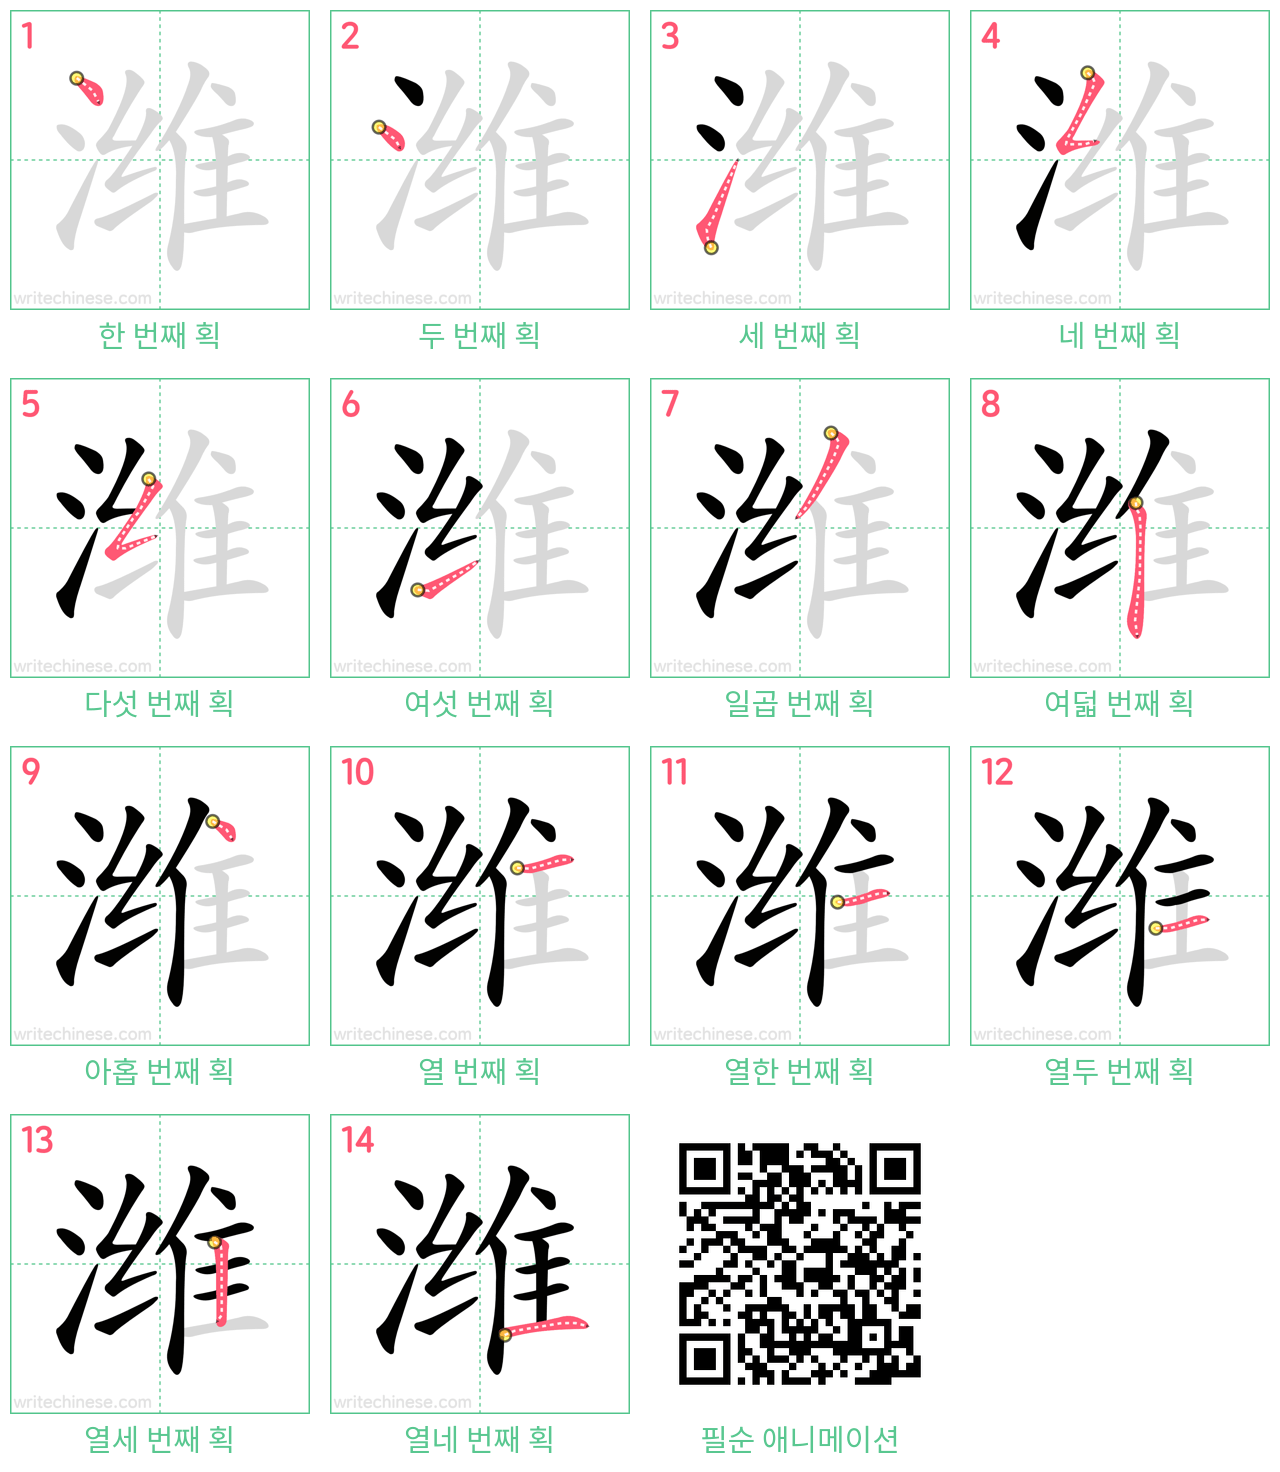 潍 step-by-step stroke order diagrams